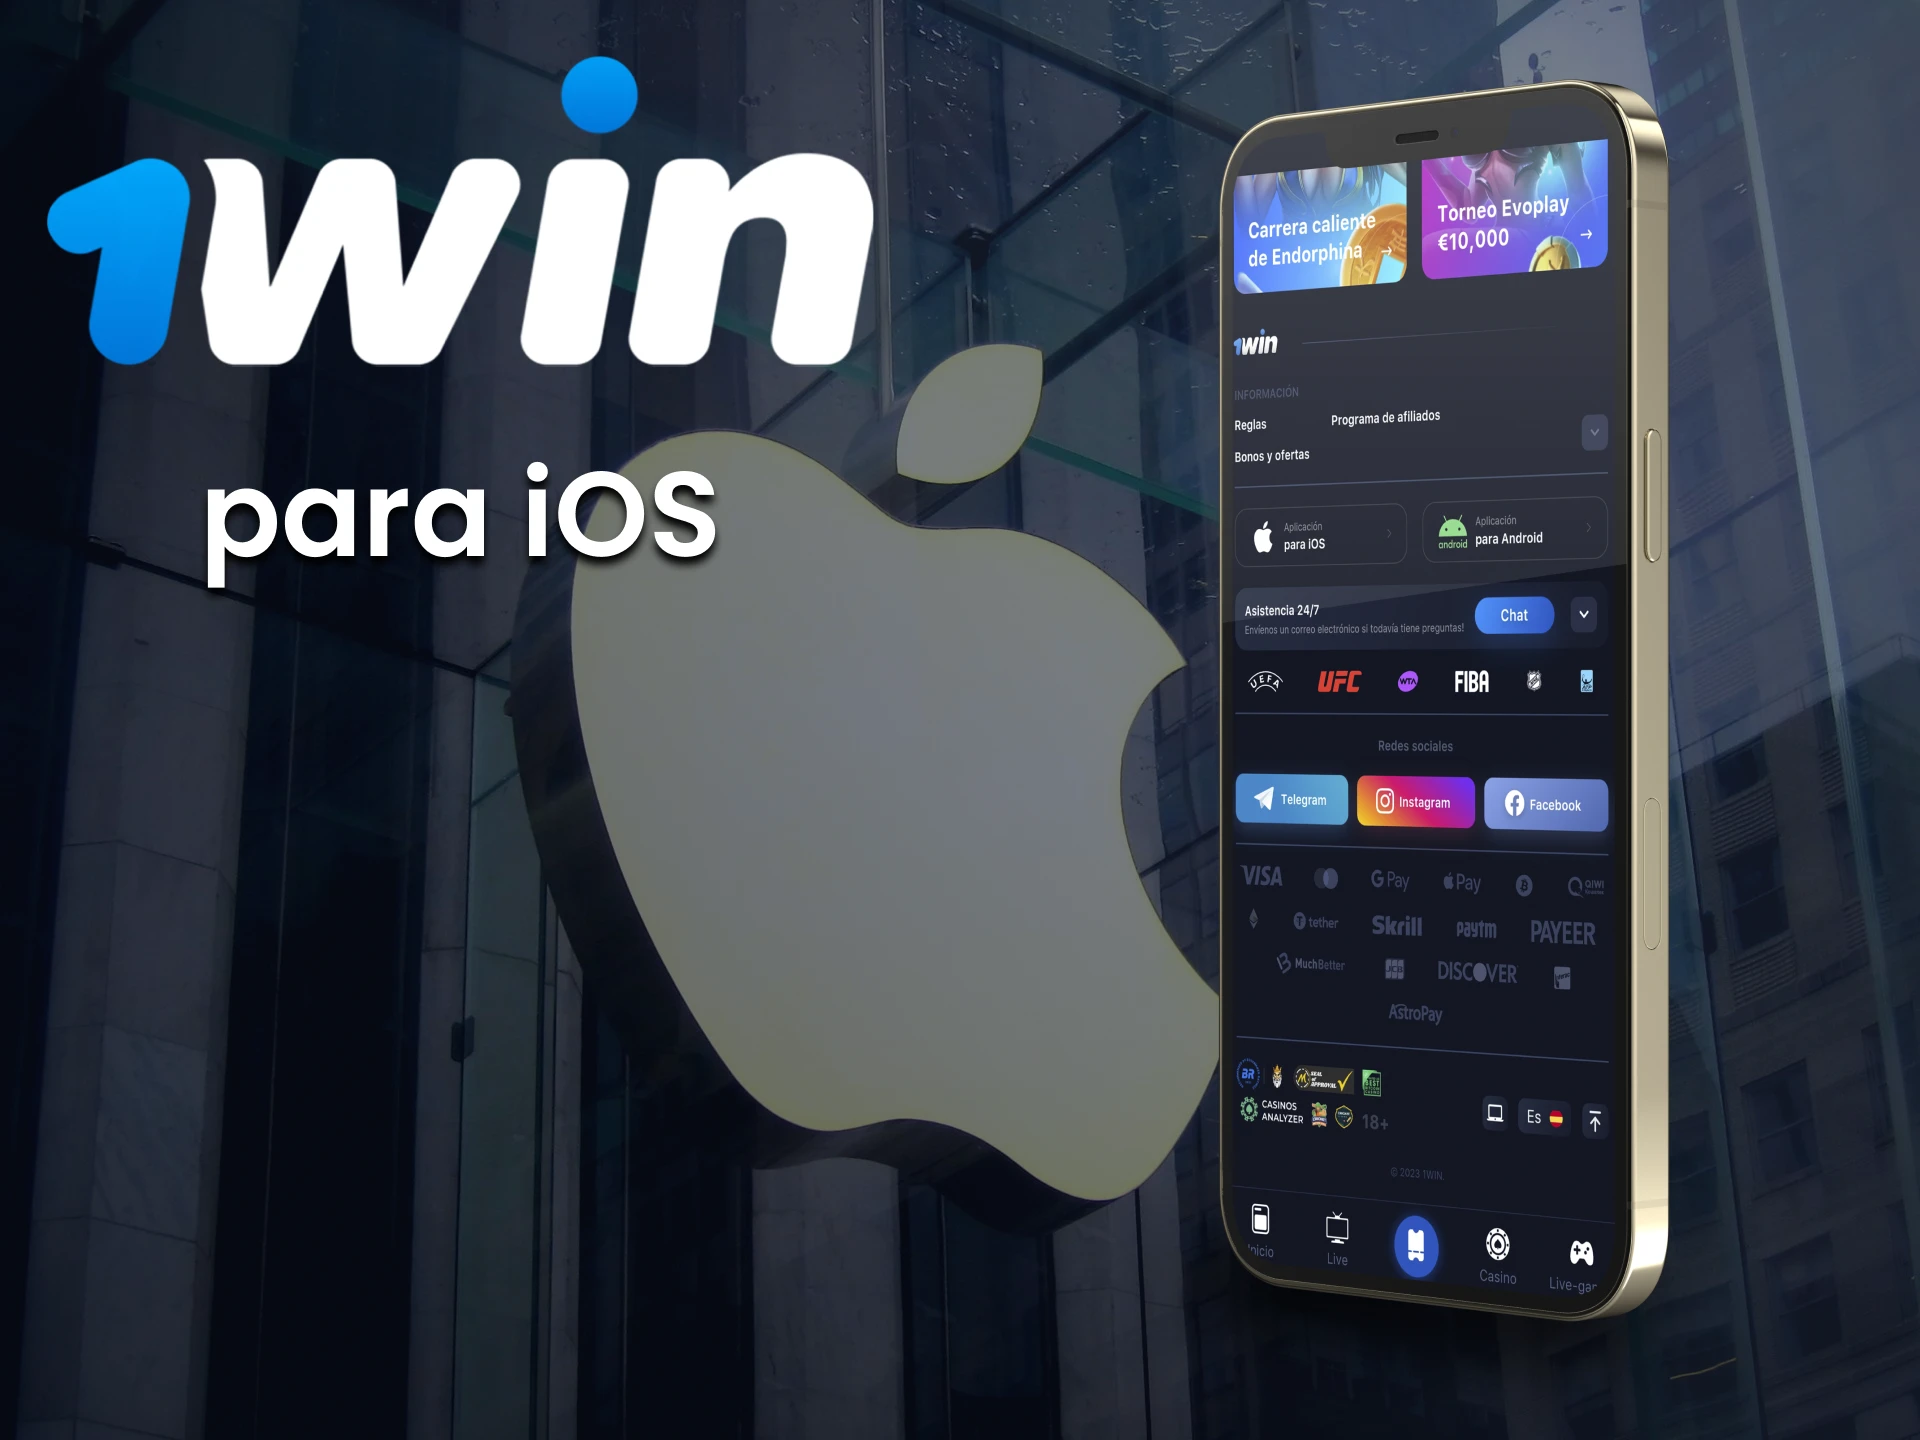 Apueste en deportes con 1win app a través de un dispositivo iOS.